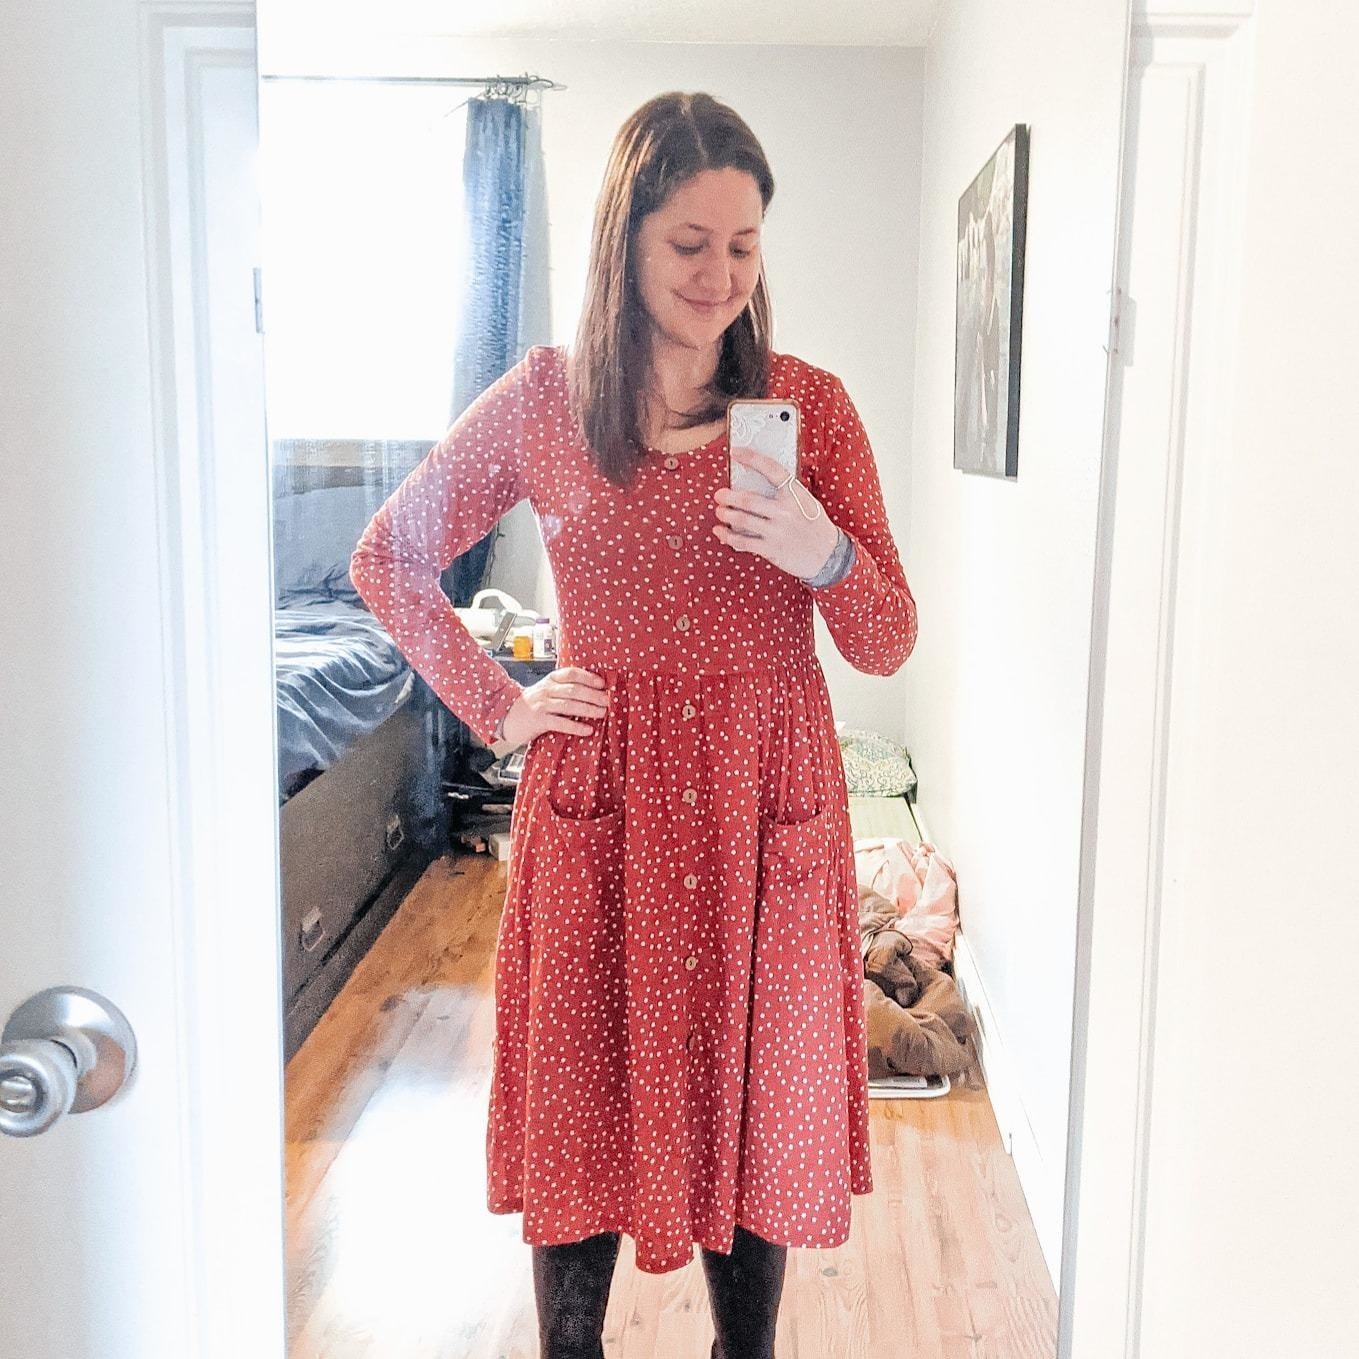 Reviewer wearing button-up polka-dot dress